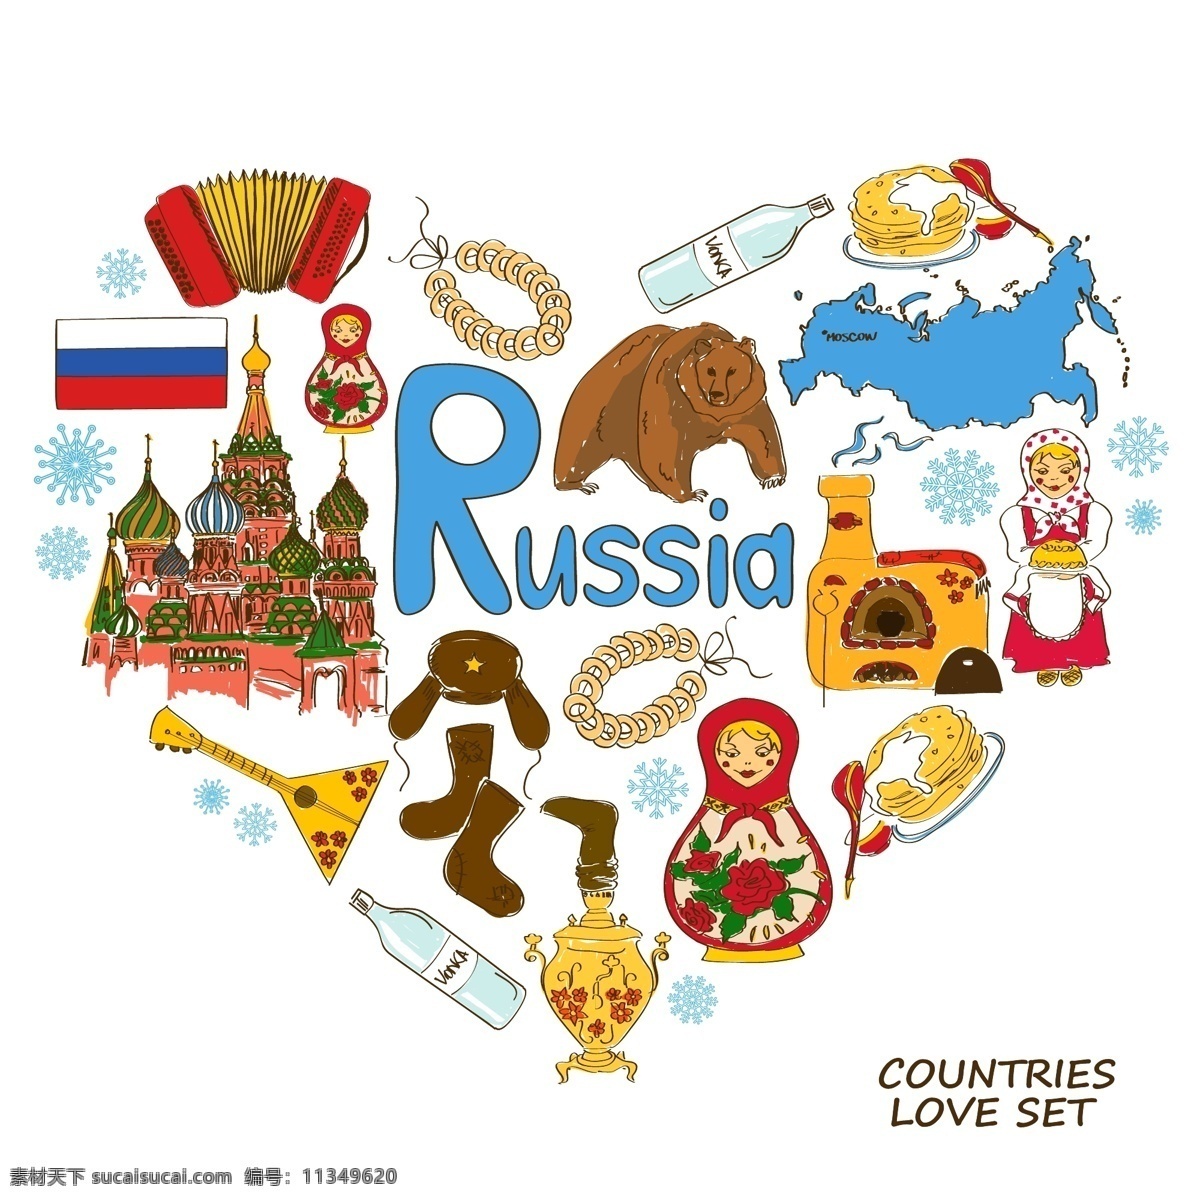 俄罗斯 国家 元素 国家元素 国家象征 国家图标 手绘 矢量 设计素材库 文化艺术 绘画书法